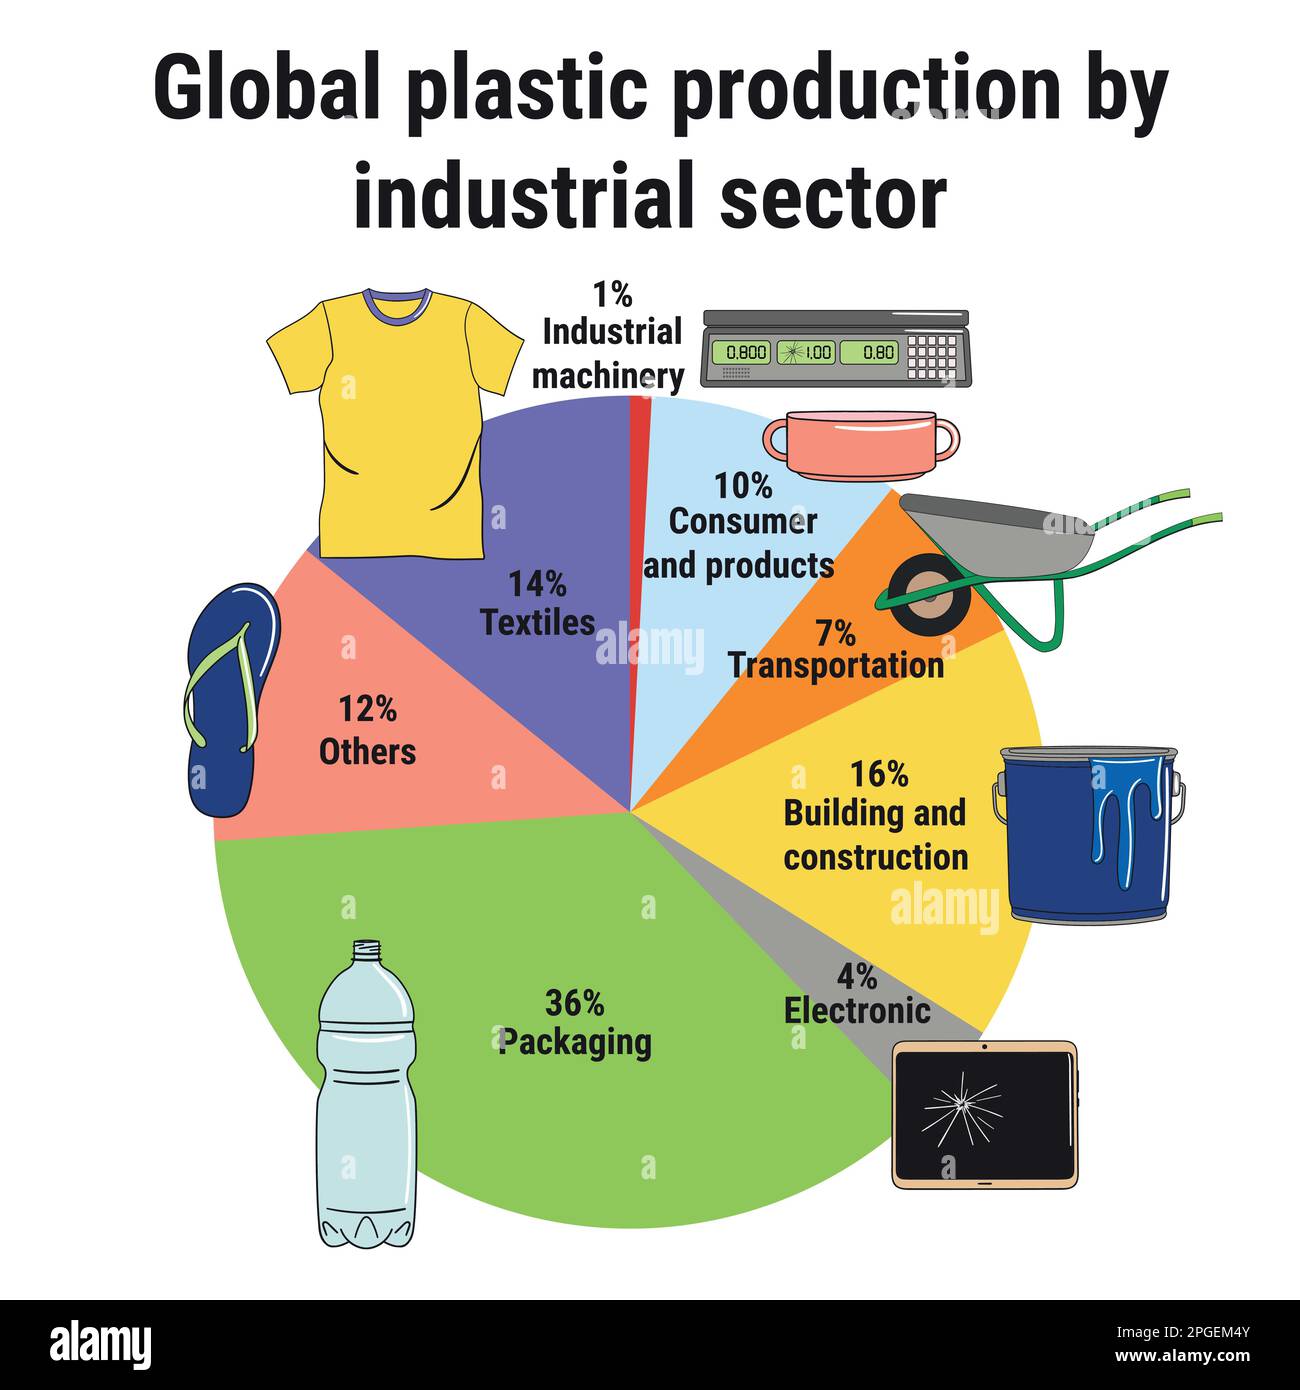 Infografica sulla produzione globale di plastica per settore industriale. Inquinamento della plastica. Gestione dei rifiuti. Illustrazione vettoriale disegnata a mano. Illustrazione Vettoriale